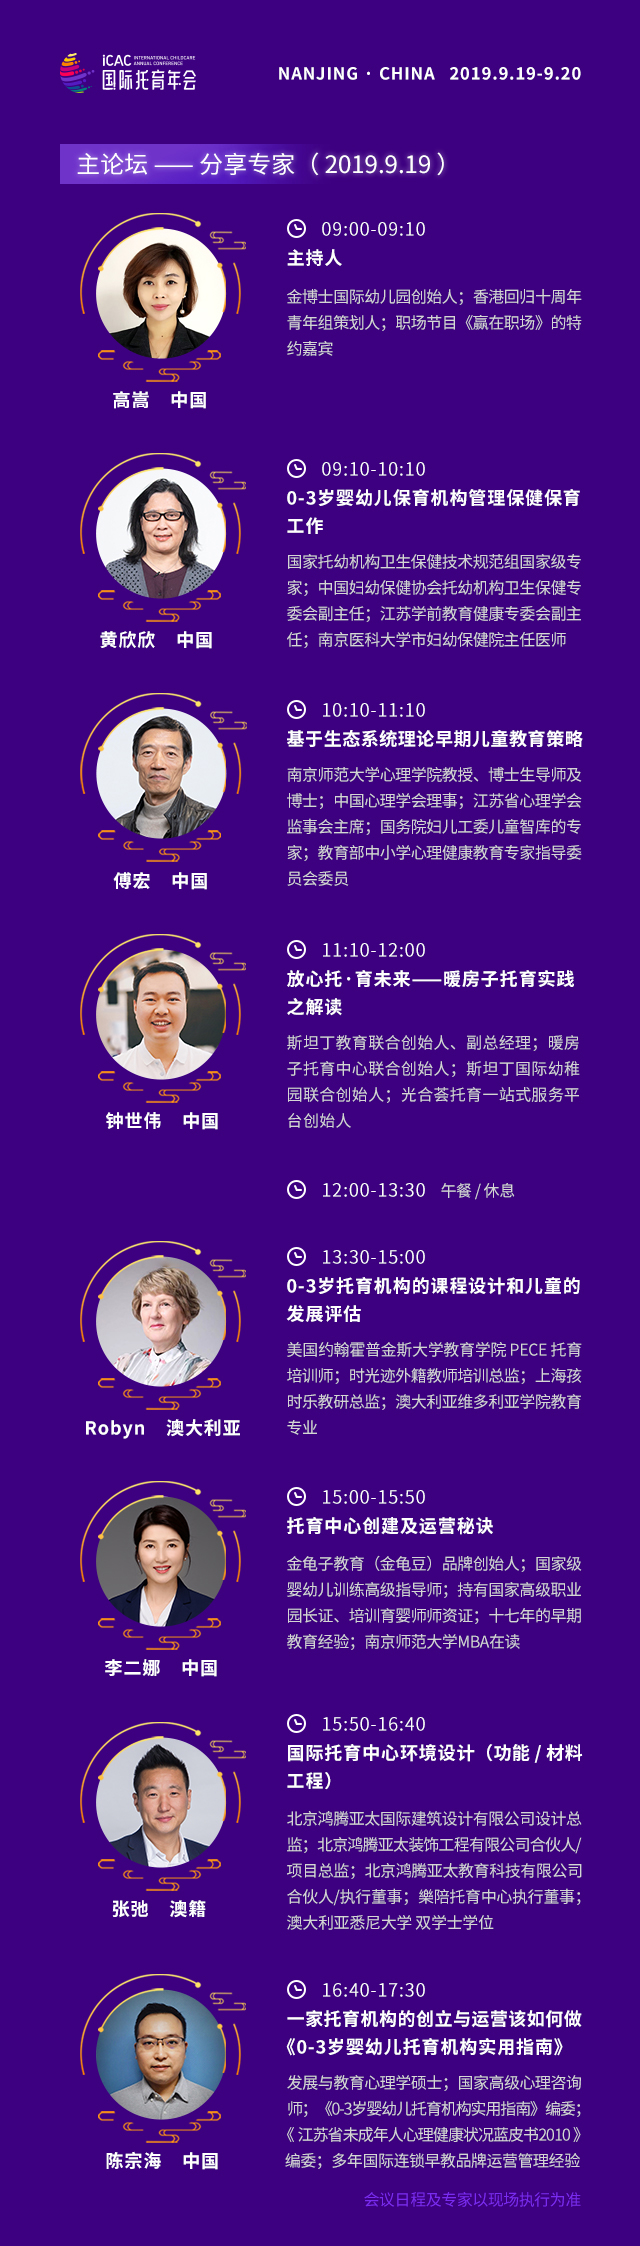 2019iCAC国际托育年会城市论坛·中国南京